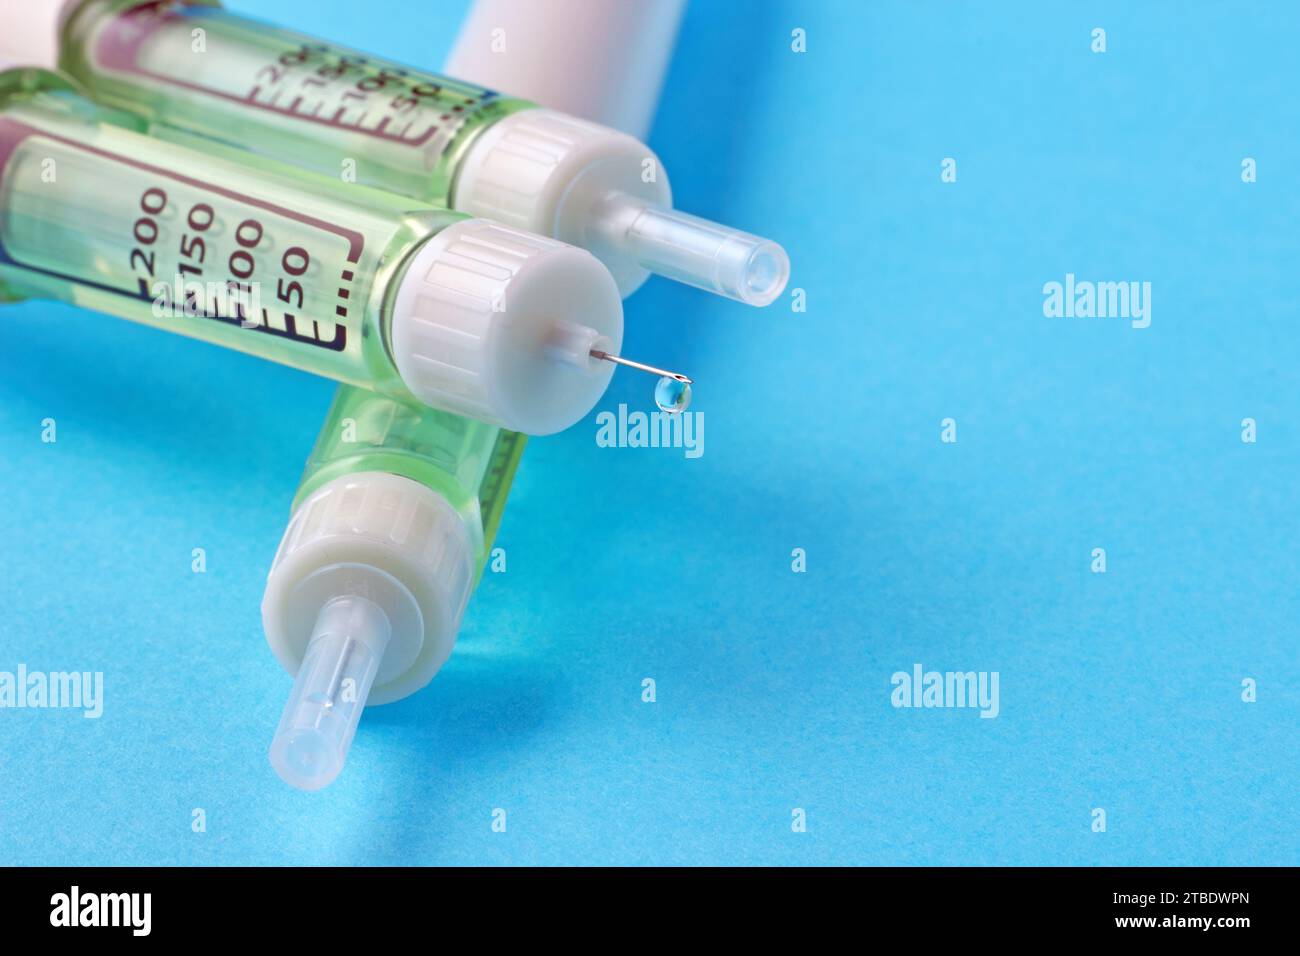 Stylo de seringue d'insuline avec une goutte d'insuline à l'extrémité de l'aiguille sur un fond bleu. Banque D'Images